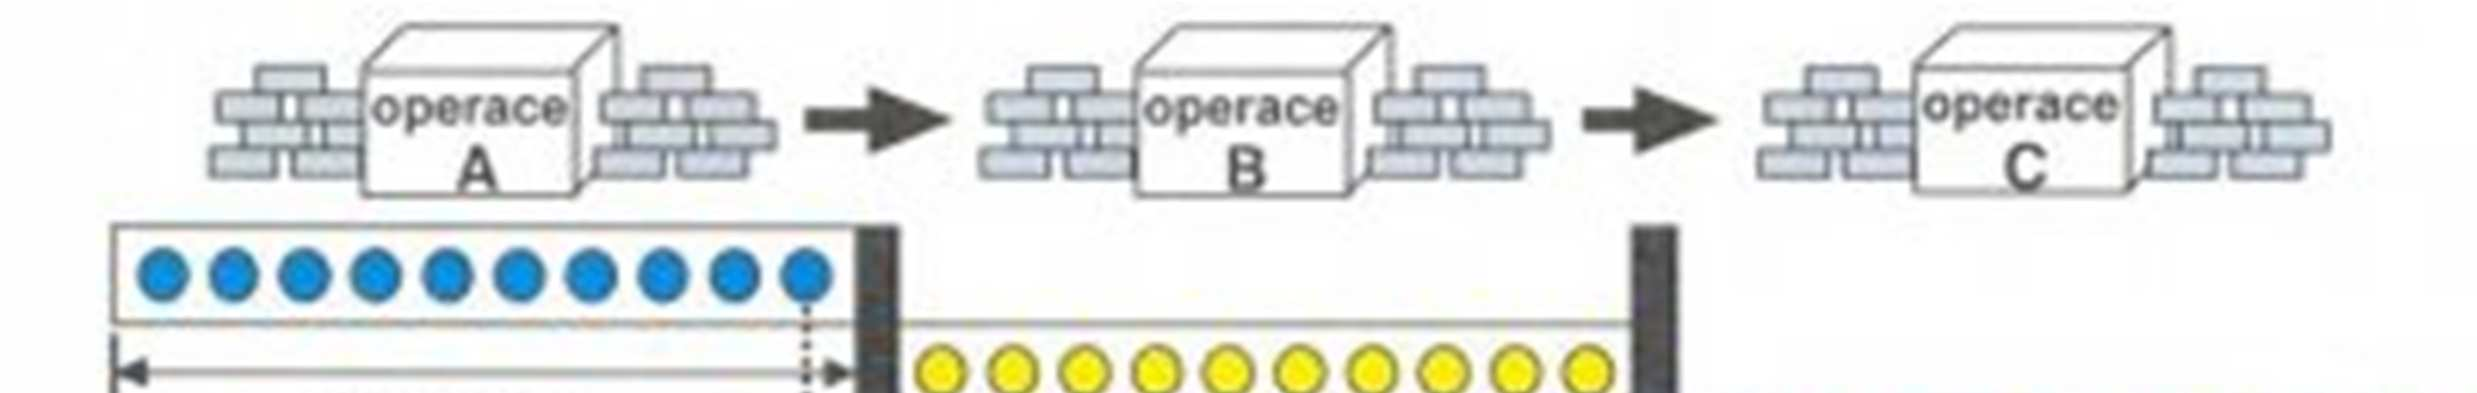 Obrázek 2 ukazuje zjednodušený příklad dávkového výroby. Tato výroba je rozdělena do tří oddělení a každé oddělení potřebuje na provedení své práce jednu minutu na jednu jednotku.